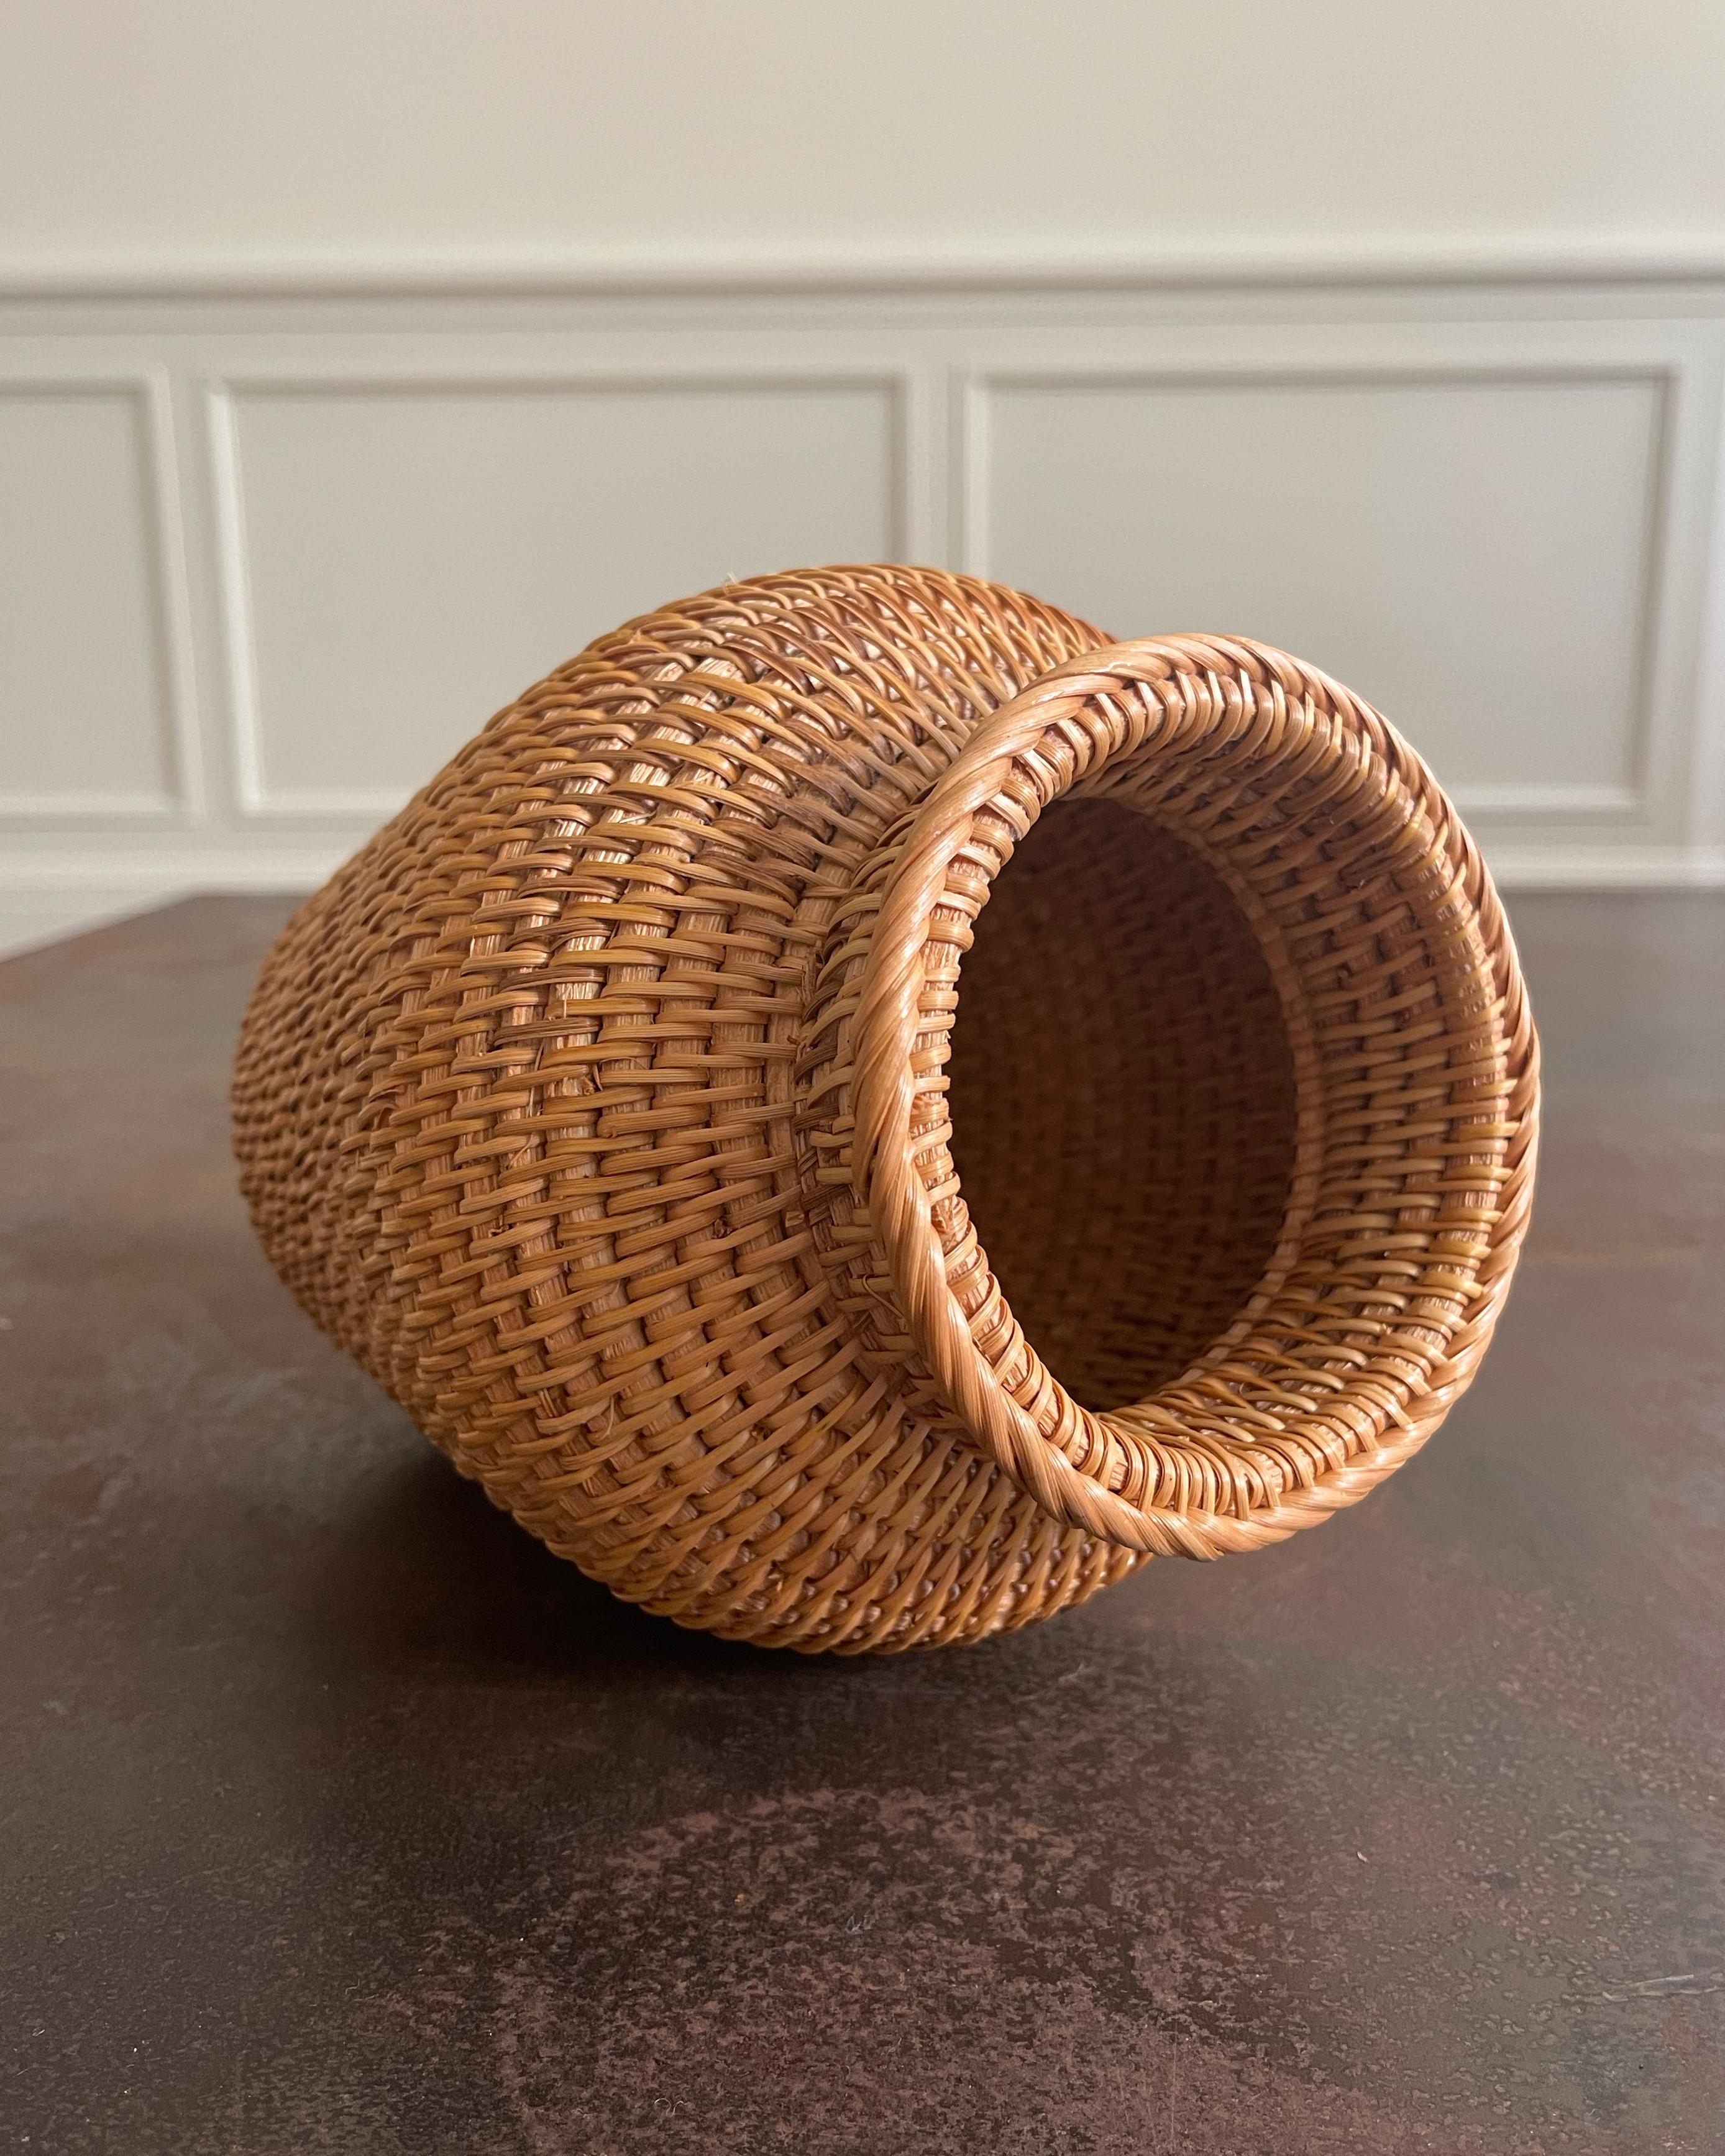 Eine klassische handgeflochtene dekorative Vase aus Rattan. Unbeschichtete Oberfläche. Nur für Kunstblumen oder Trockenblumen geeignet.

Abmessungen:
- 3,25